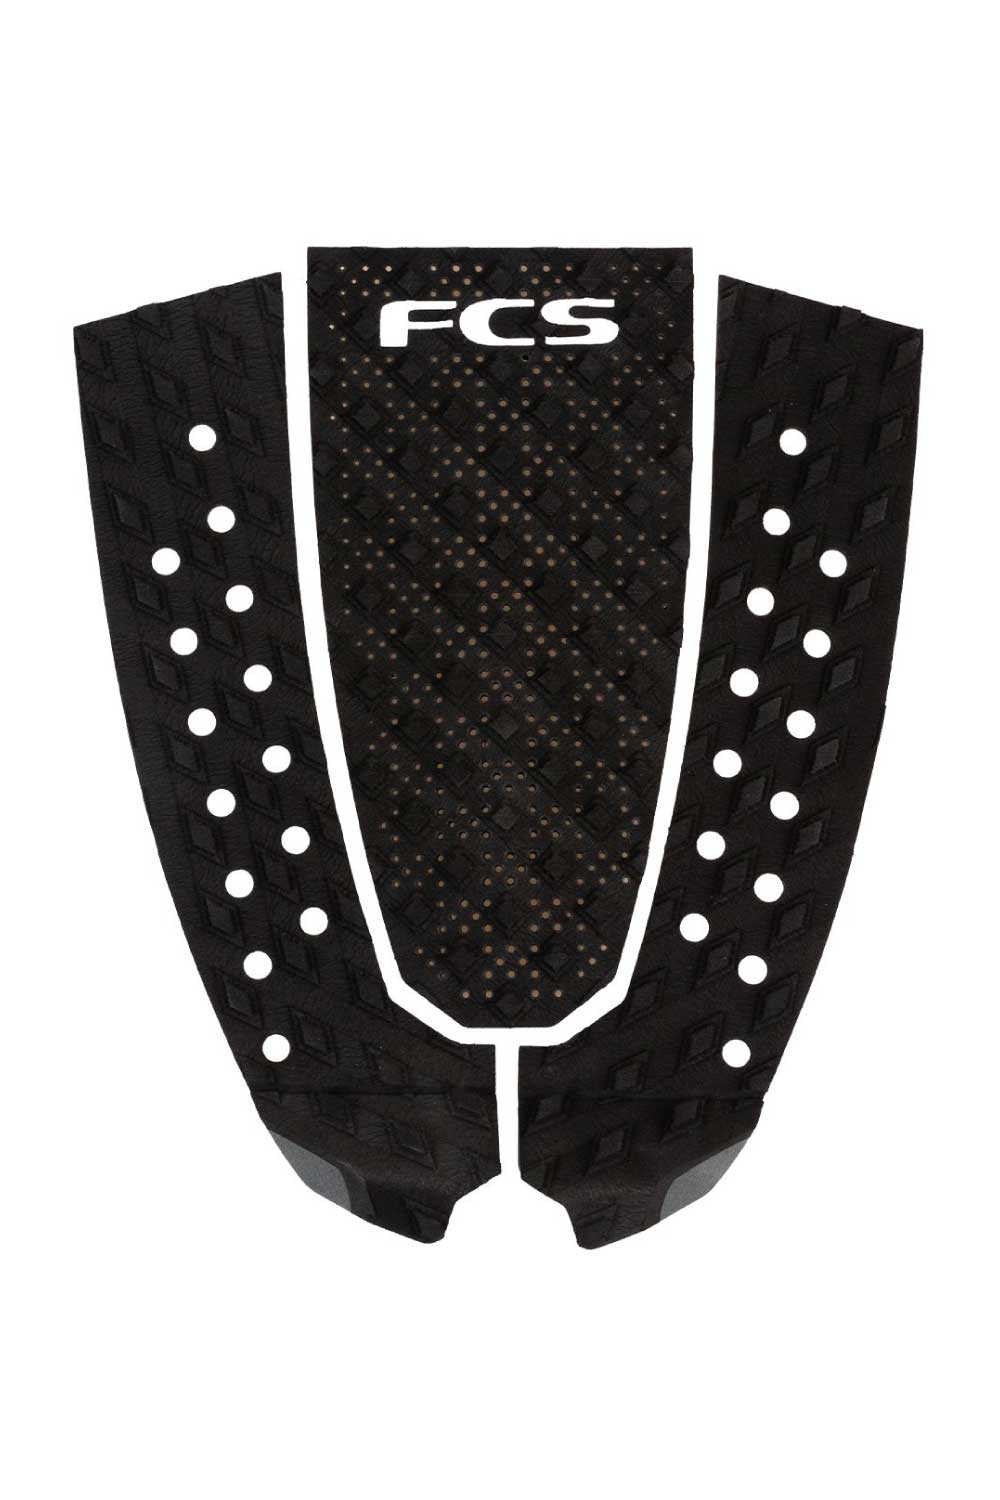 FCS T-3 Pin Tail Grip Pad Black